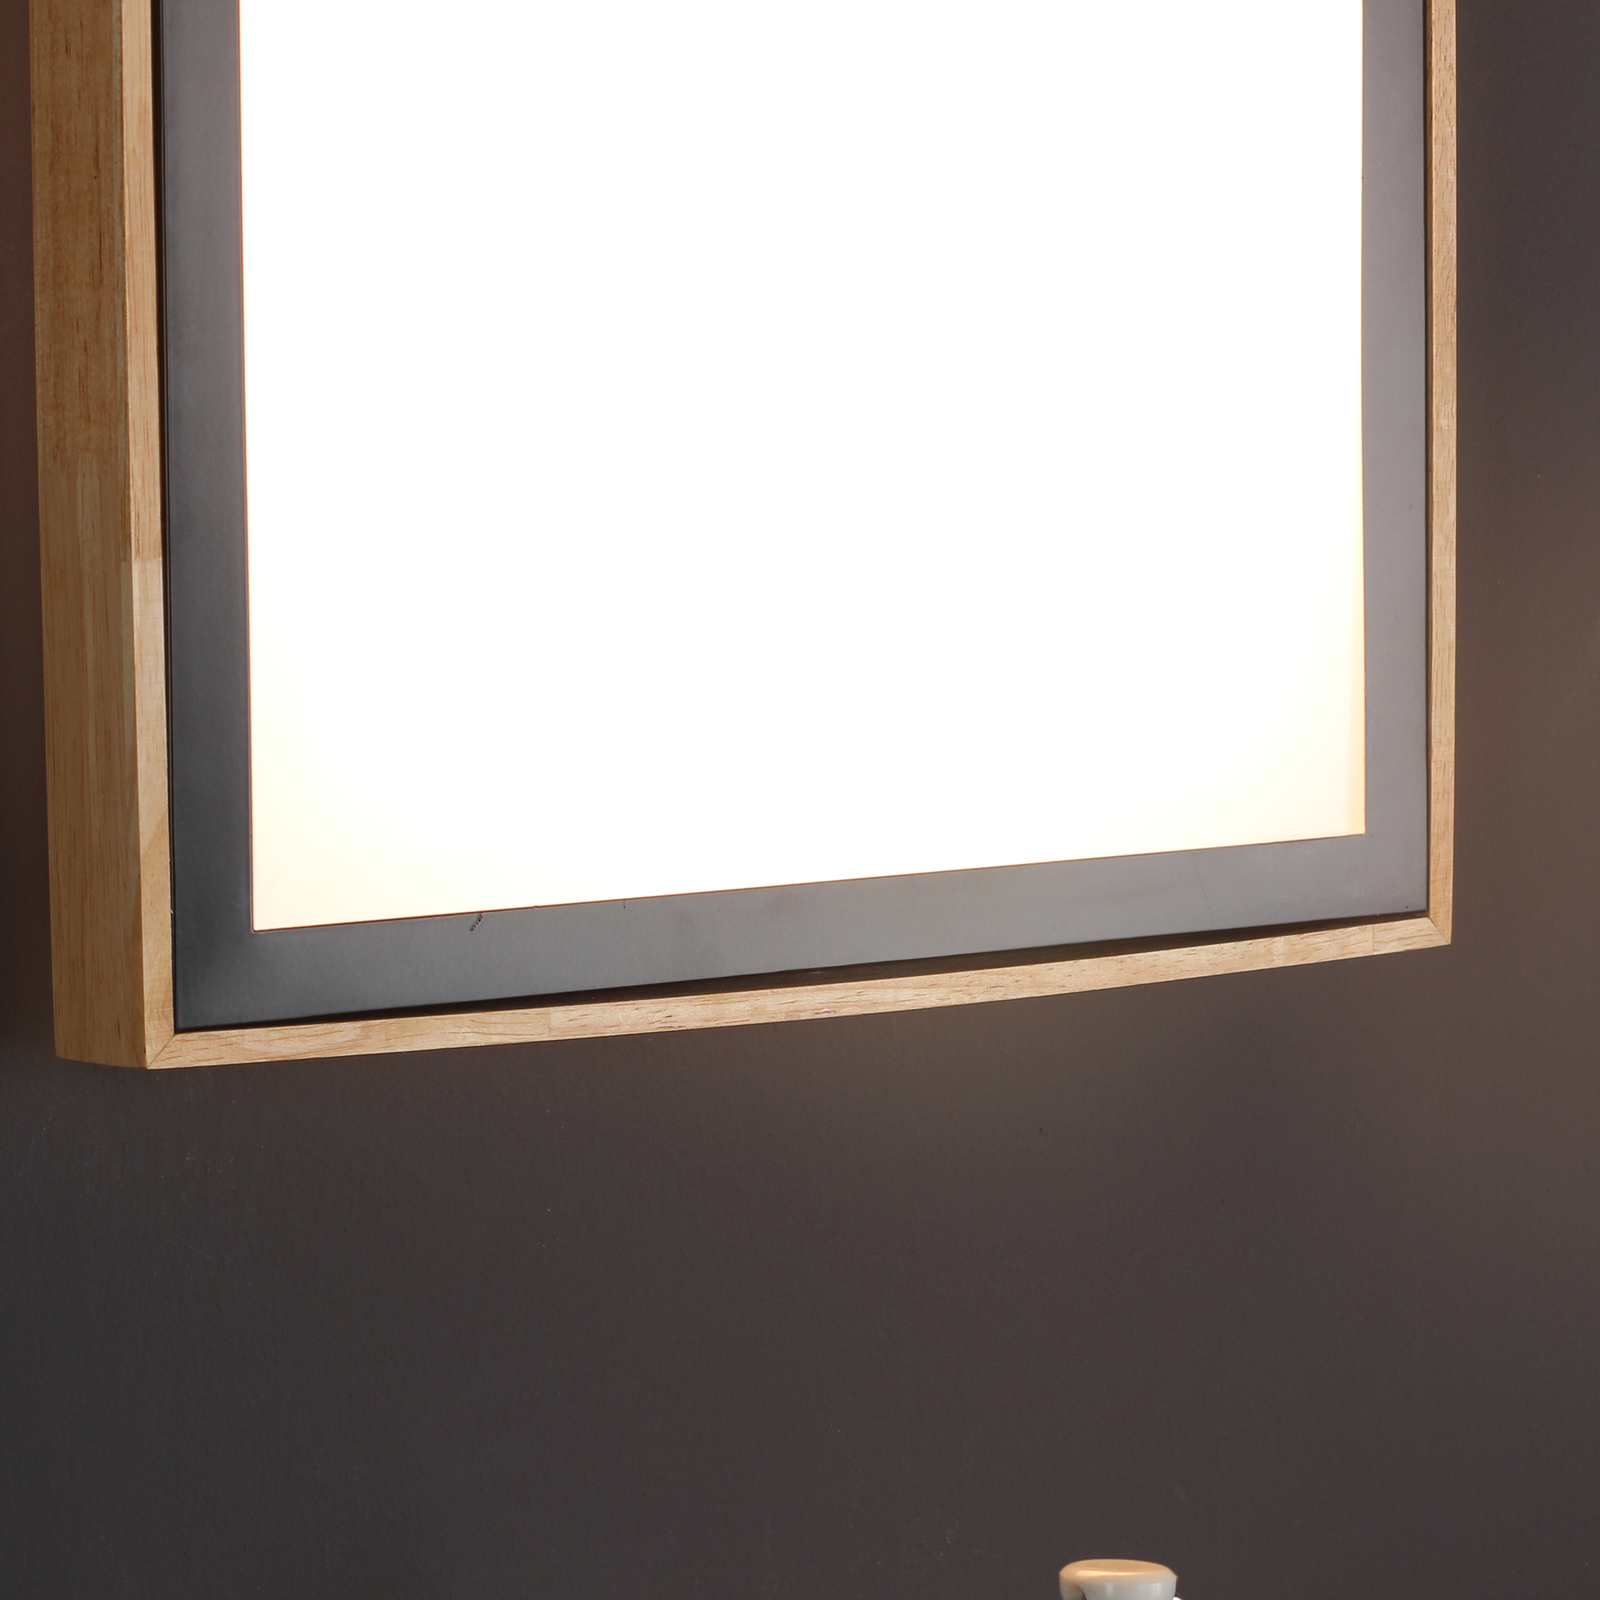 Solstar LED ceiling light, angular 39 x 39 cm